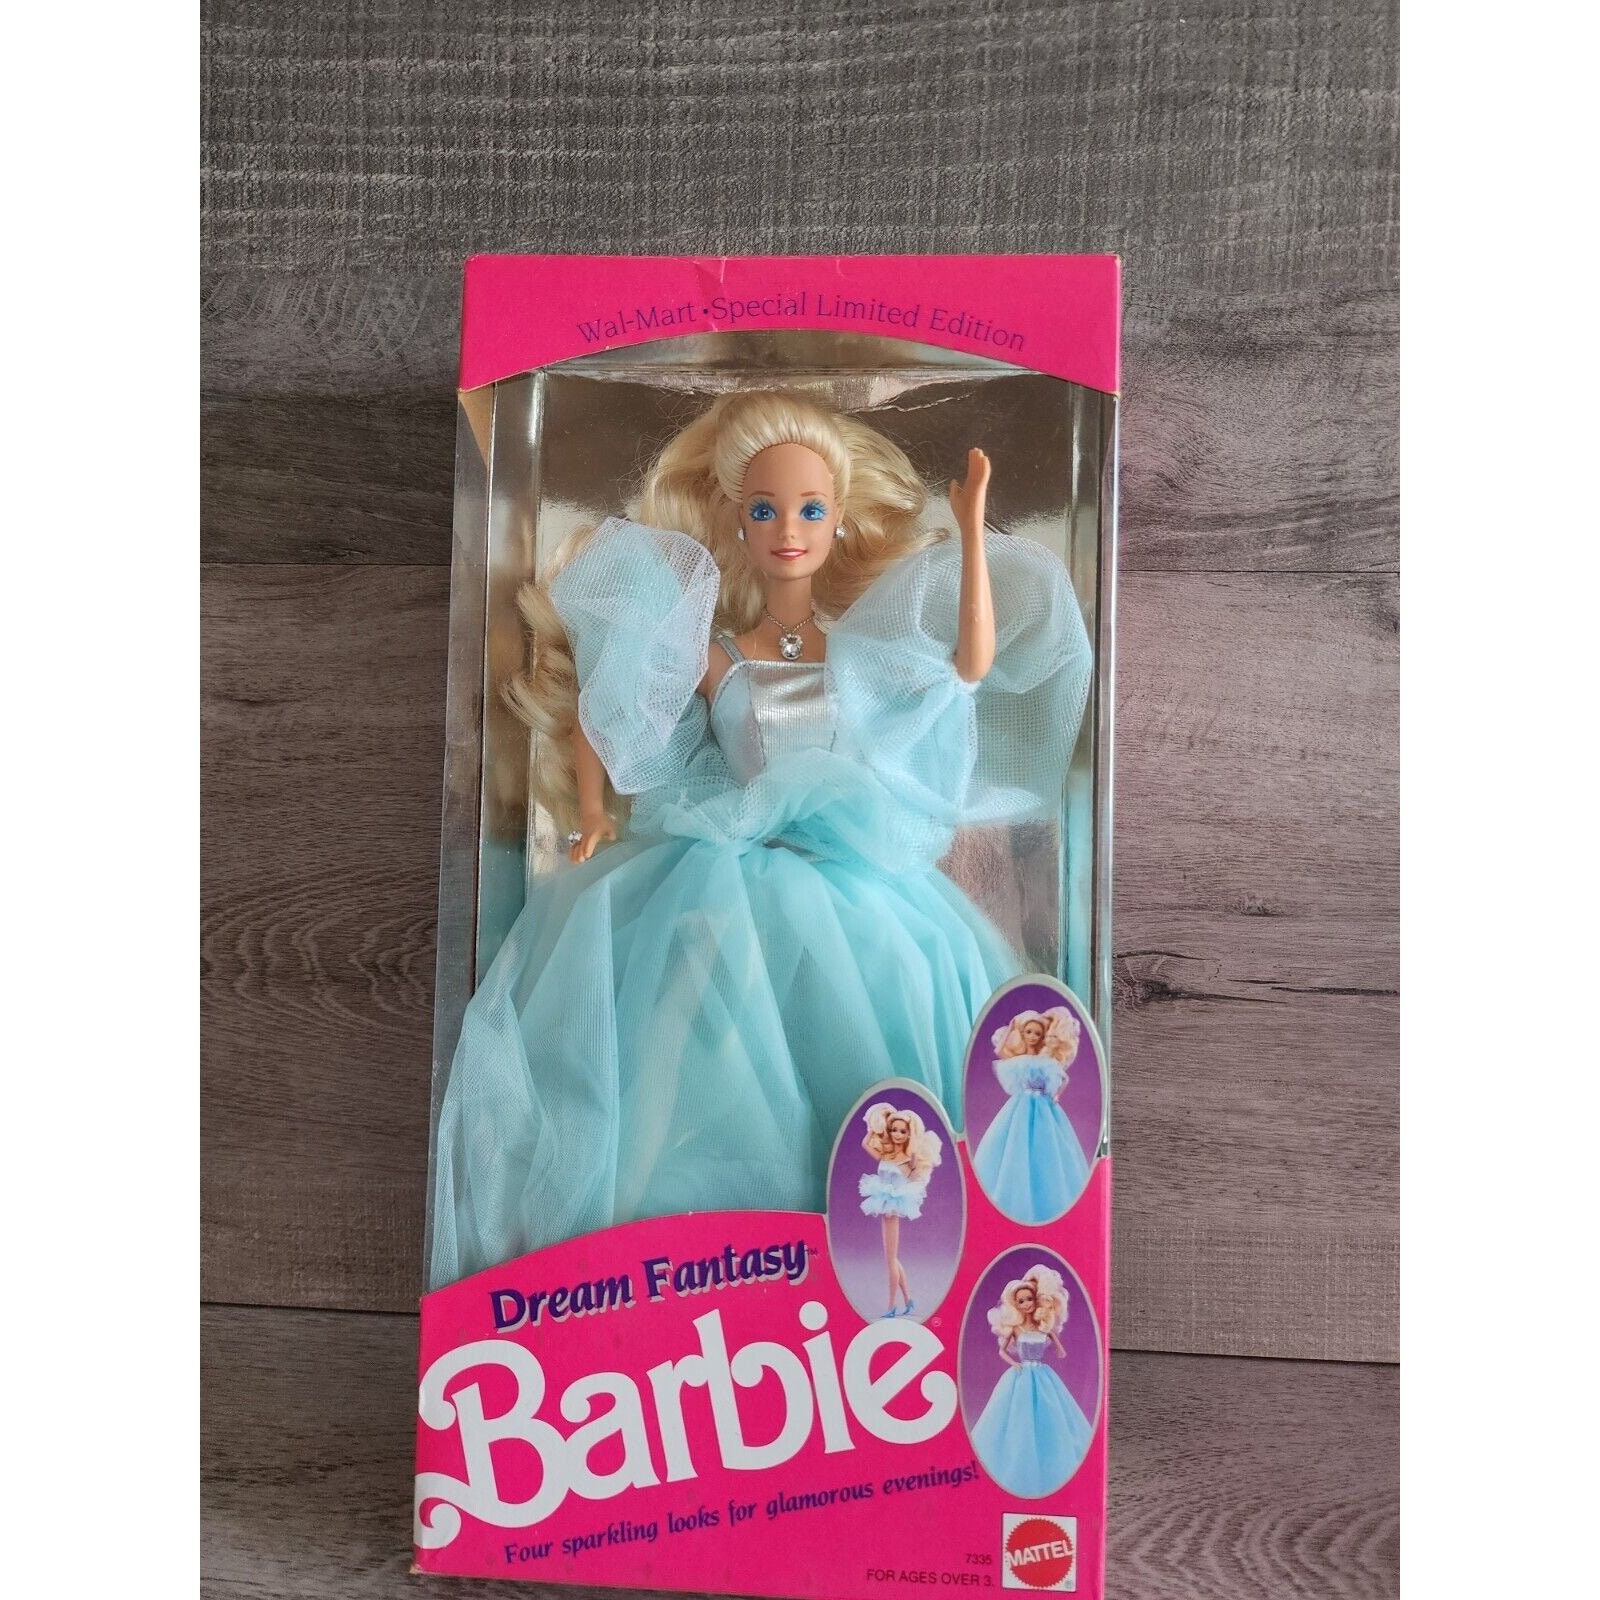 POUPEES BARBIE FILM N°4 -2004 BARBIE COEUR DE PRINCESSE - collection de poupées  Barbie films fairytopia vintage jem pollypocket .over-blog.com